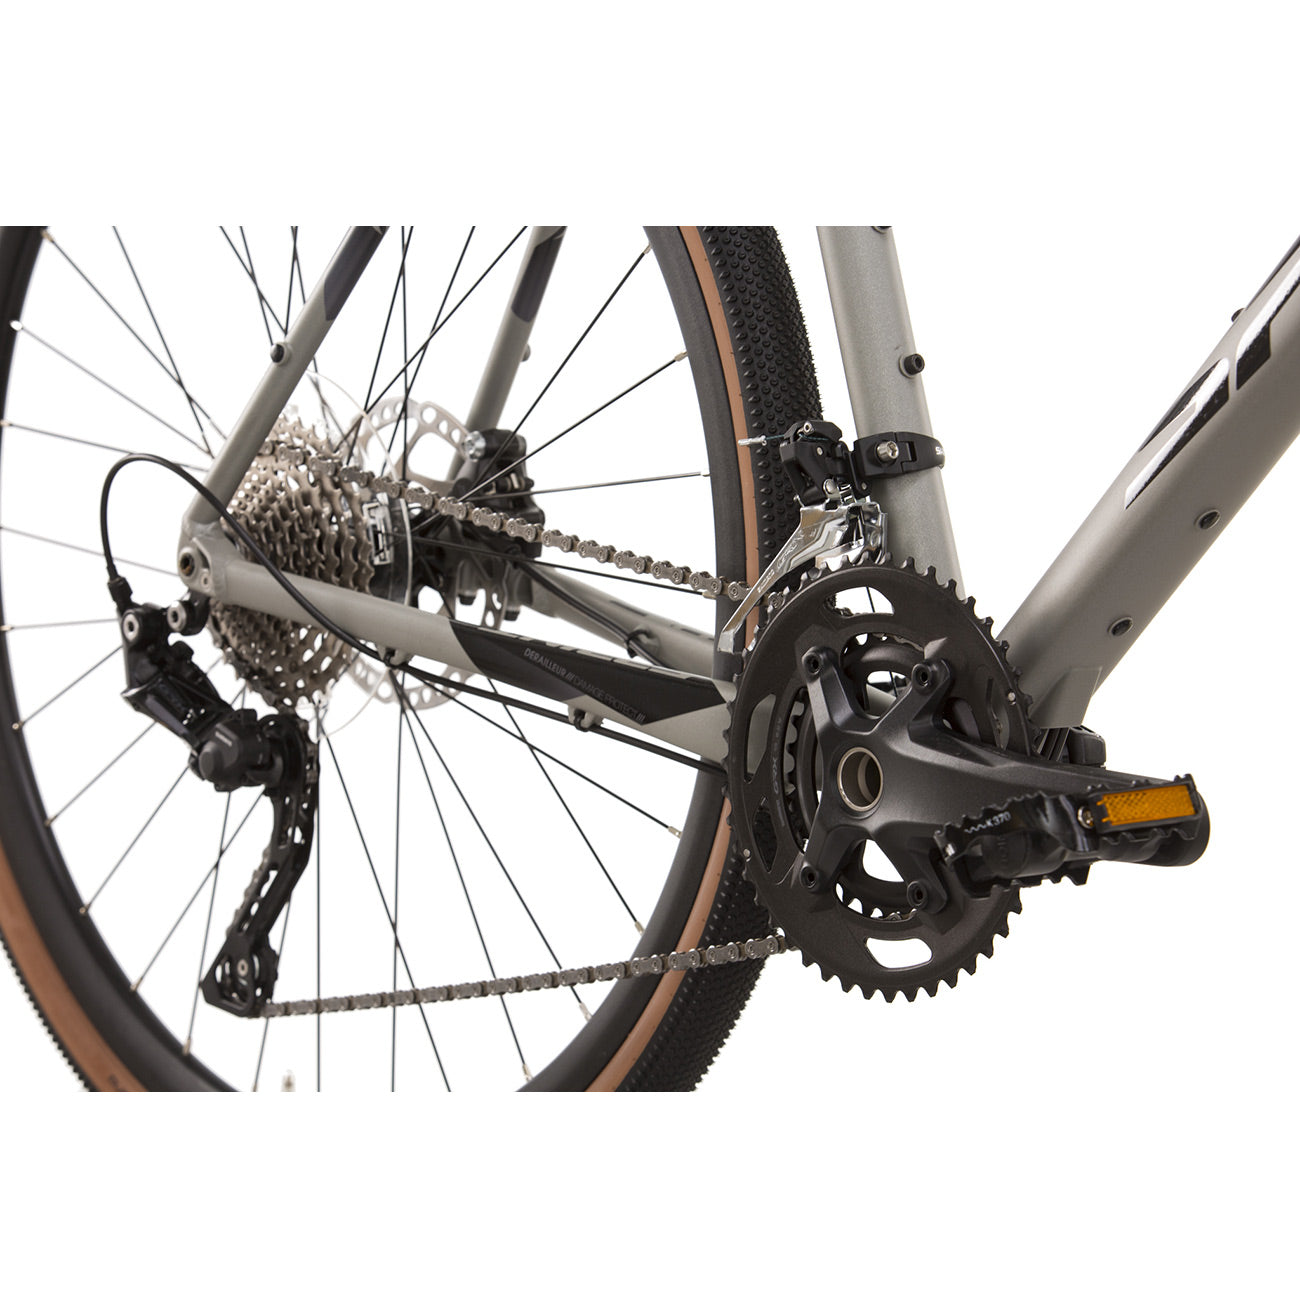 herren-gravel-bike-fahrrad-whister-shimano-grx-400-2-9-gang-52-56-cm-12pj0duZeoYXytO